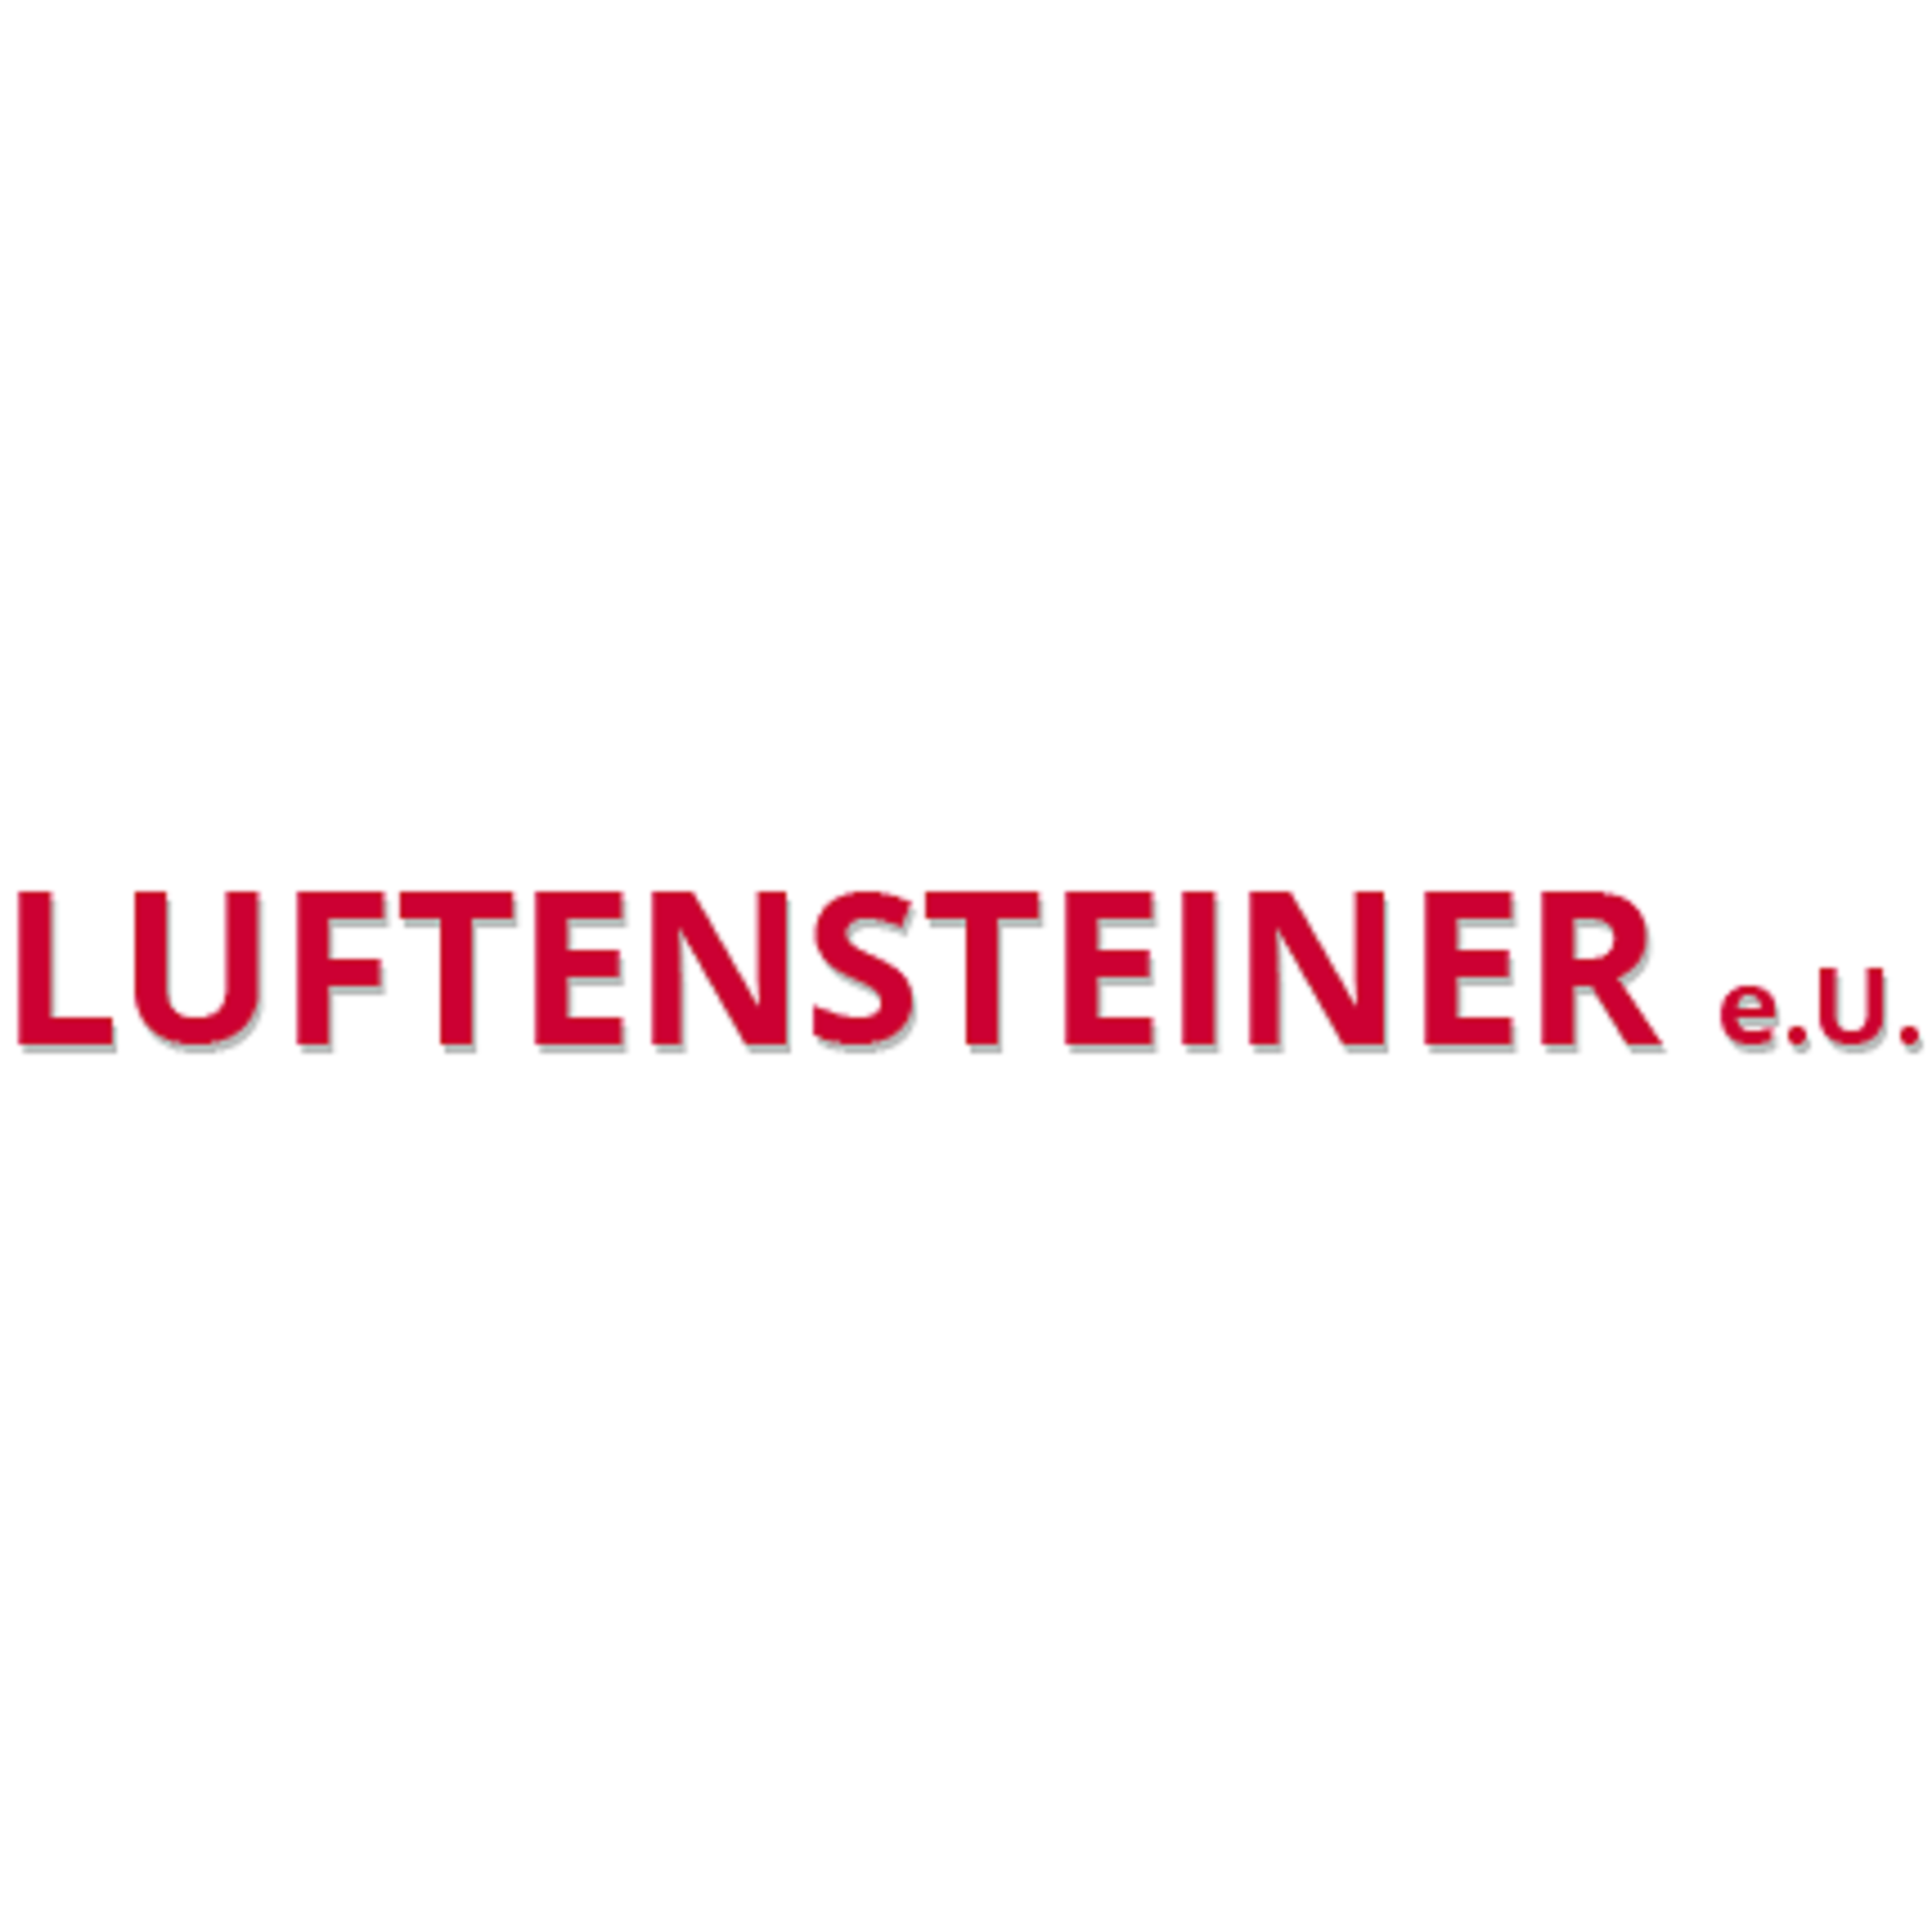 Werner Luftensteiner e.U.